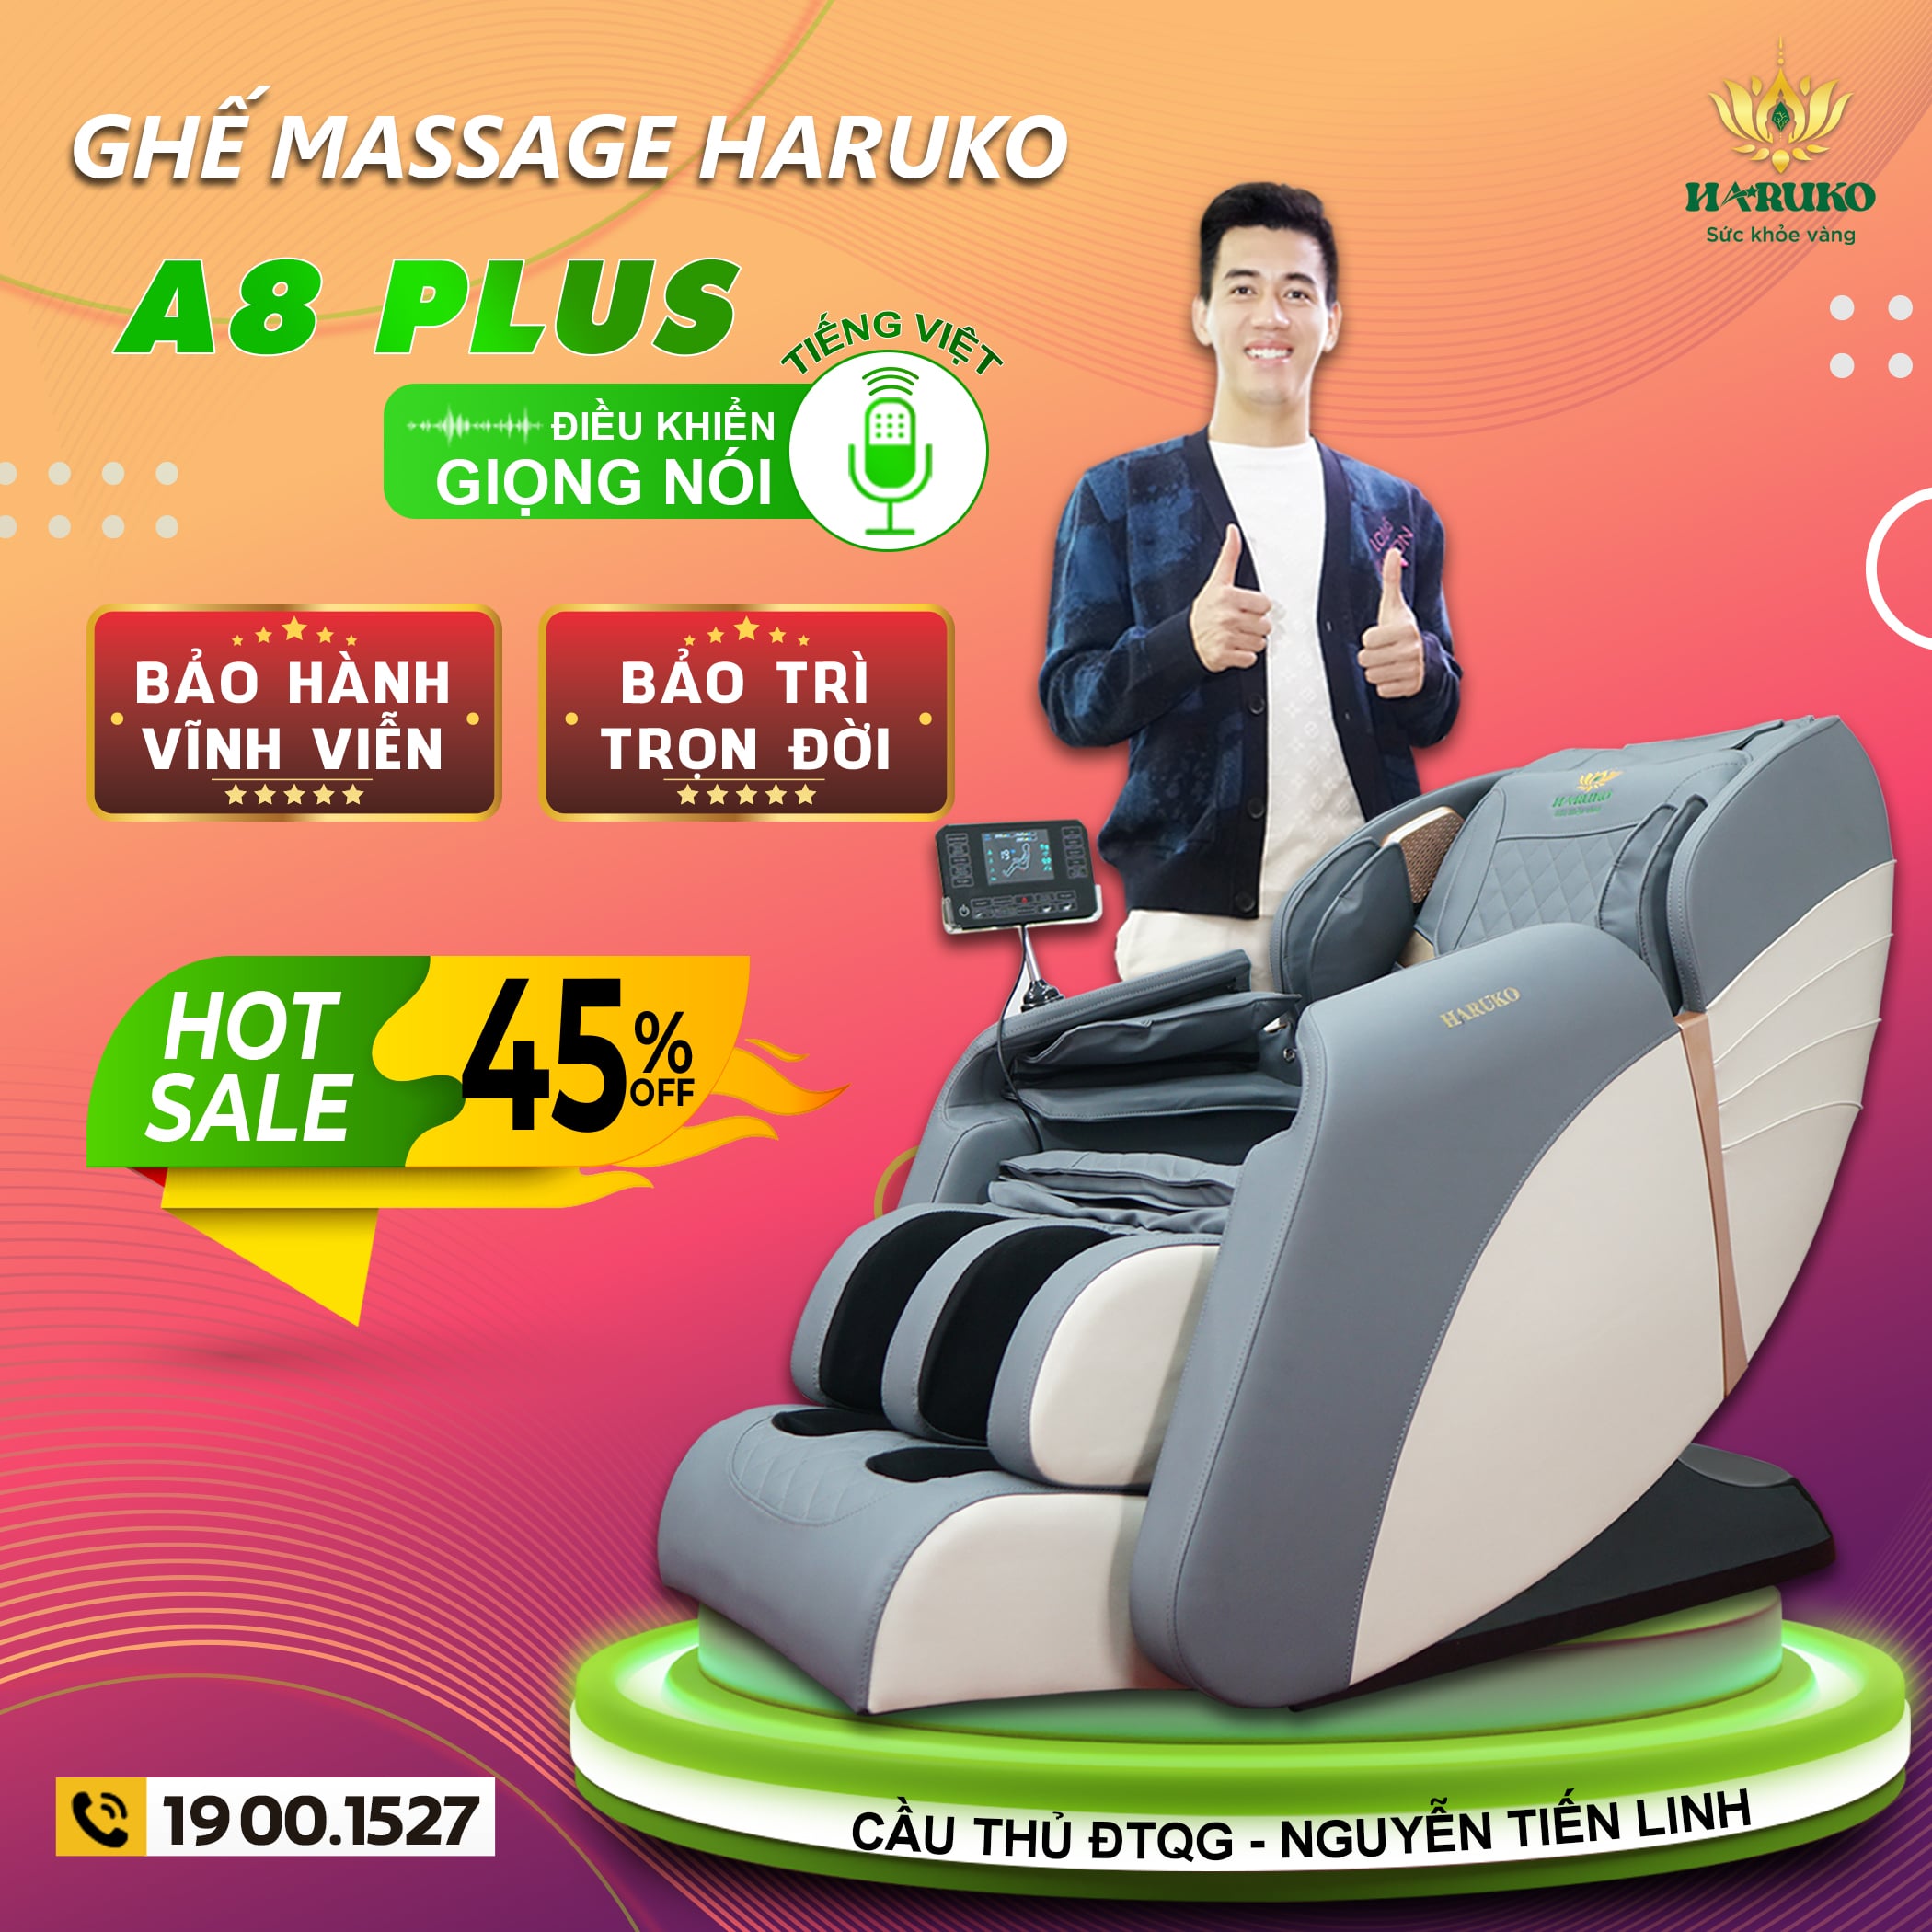 Ghế massage Akina A8 sở hữu mức giá ưu đãi thu hút được sự quan tâm rất lớn của người dùng kể từ khi mới ra mắt